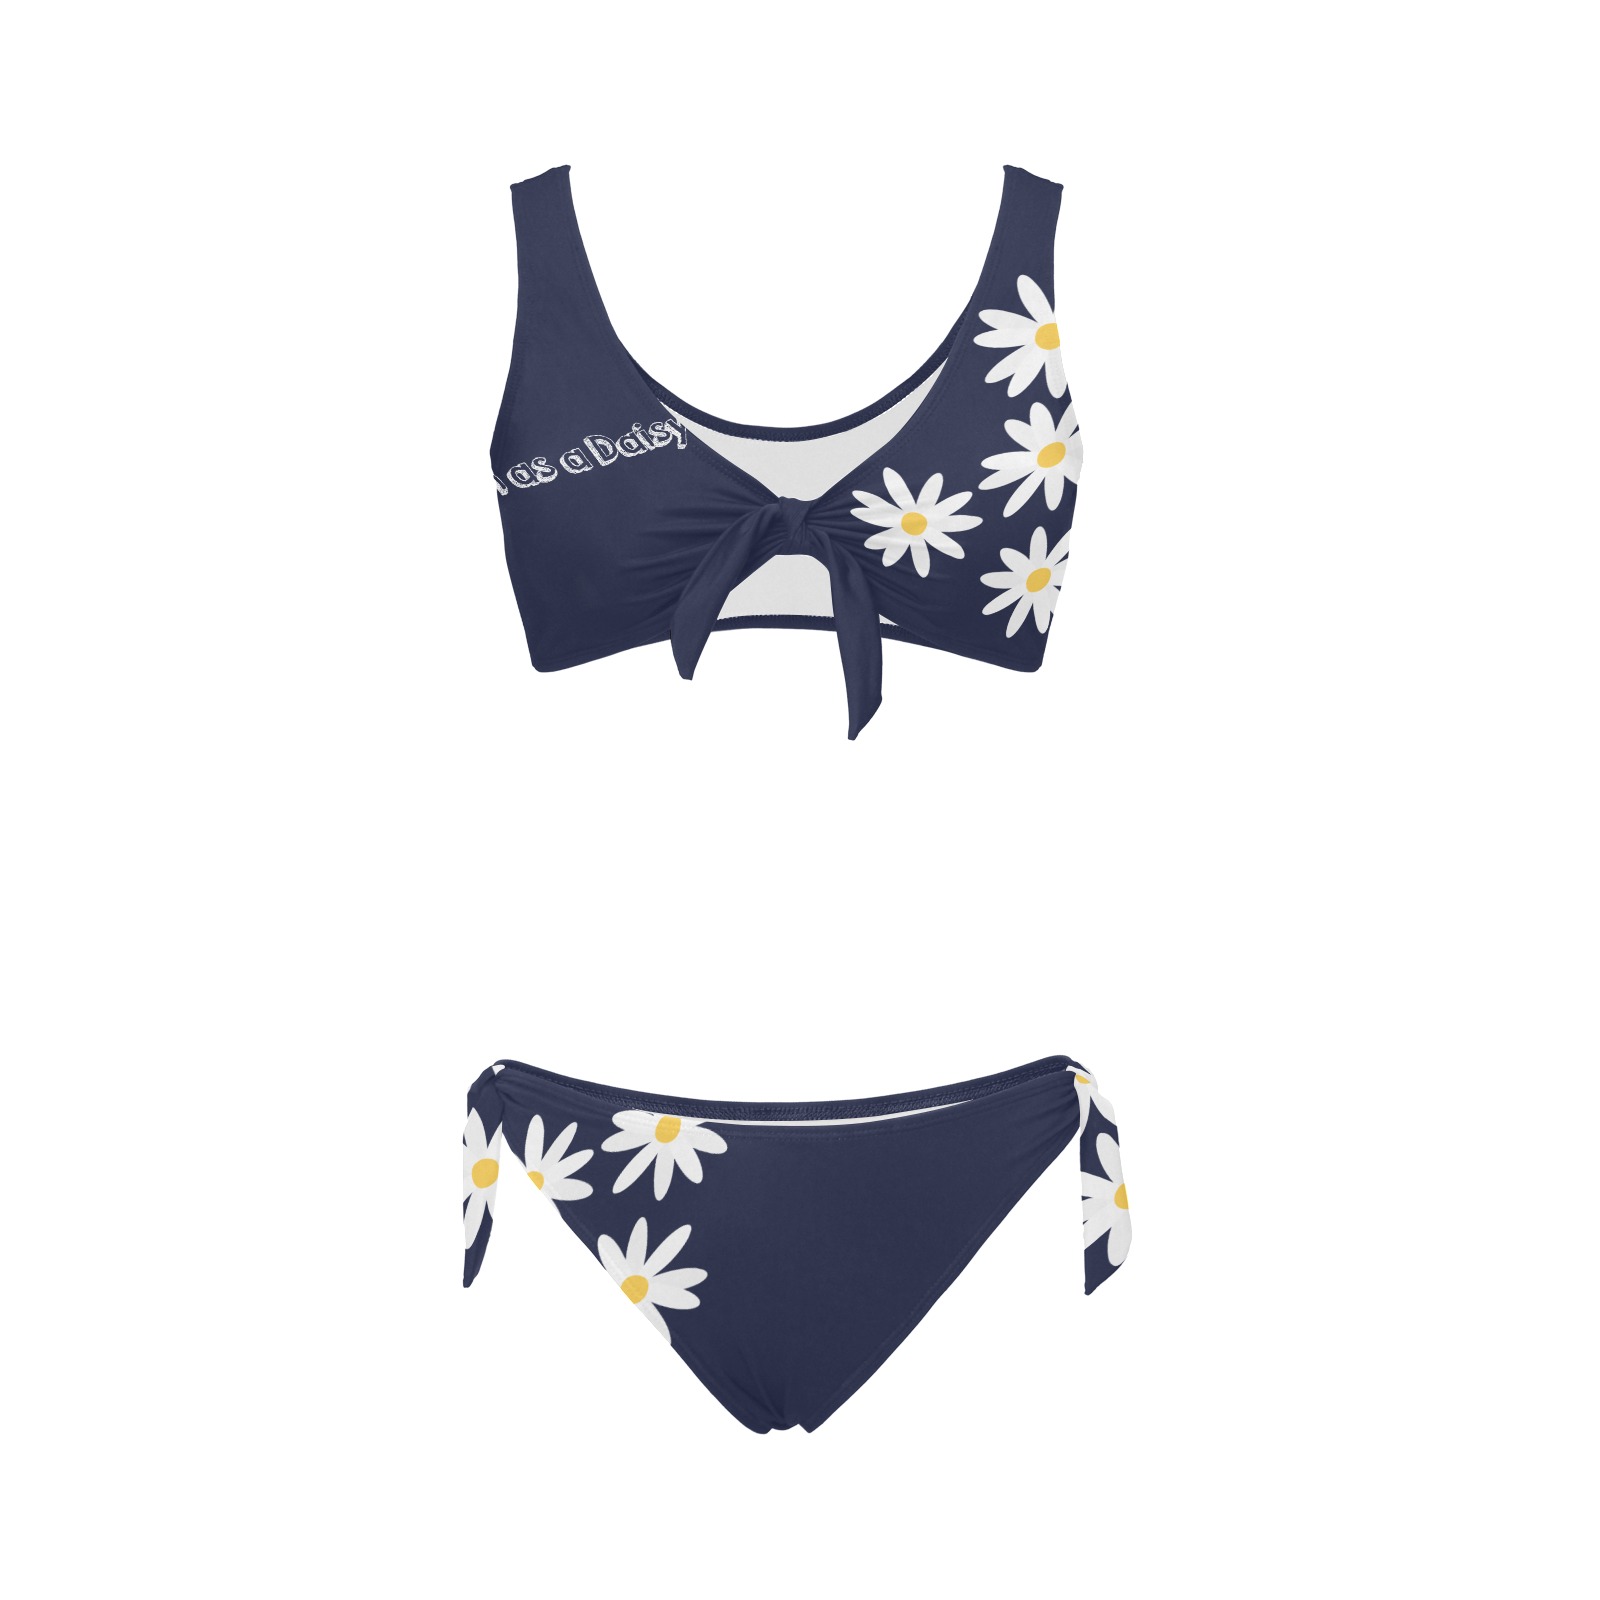 Daisy Woman's Swimwear Navy Bow Tie Front Bikini Swimsuit (Model S38)